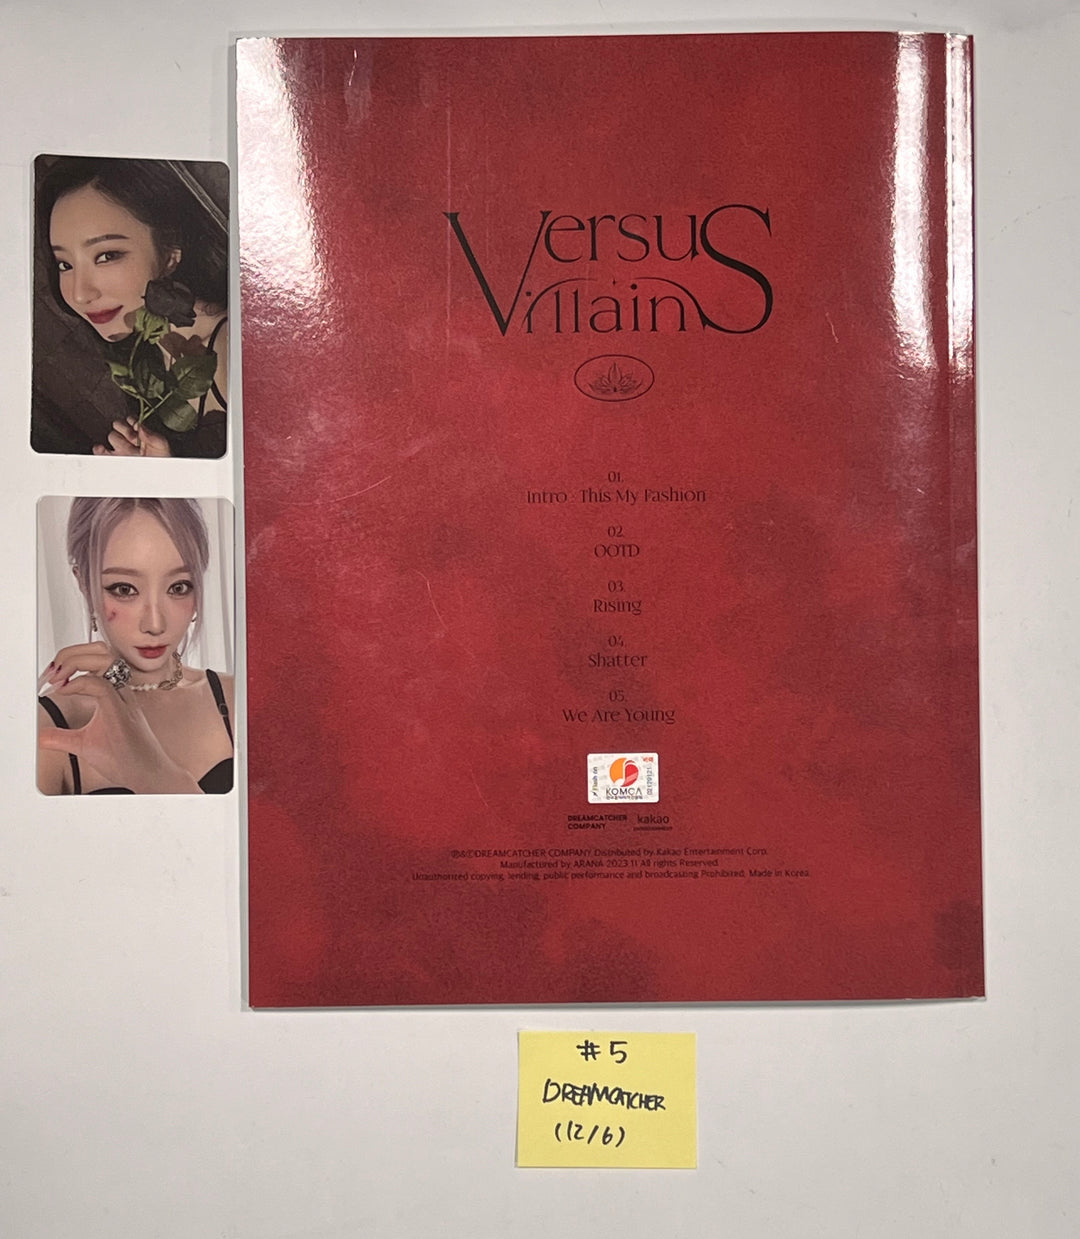 Aespa「Drama」、Dreamcatcher「VillainS」、Red Velvet「Chill Kill」 - 直筆サイン入りプロモアルバム [23.12.06]